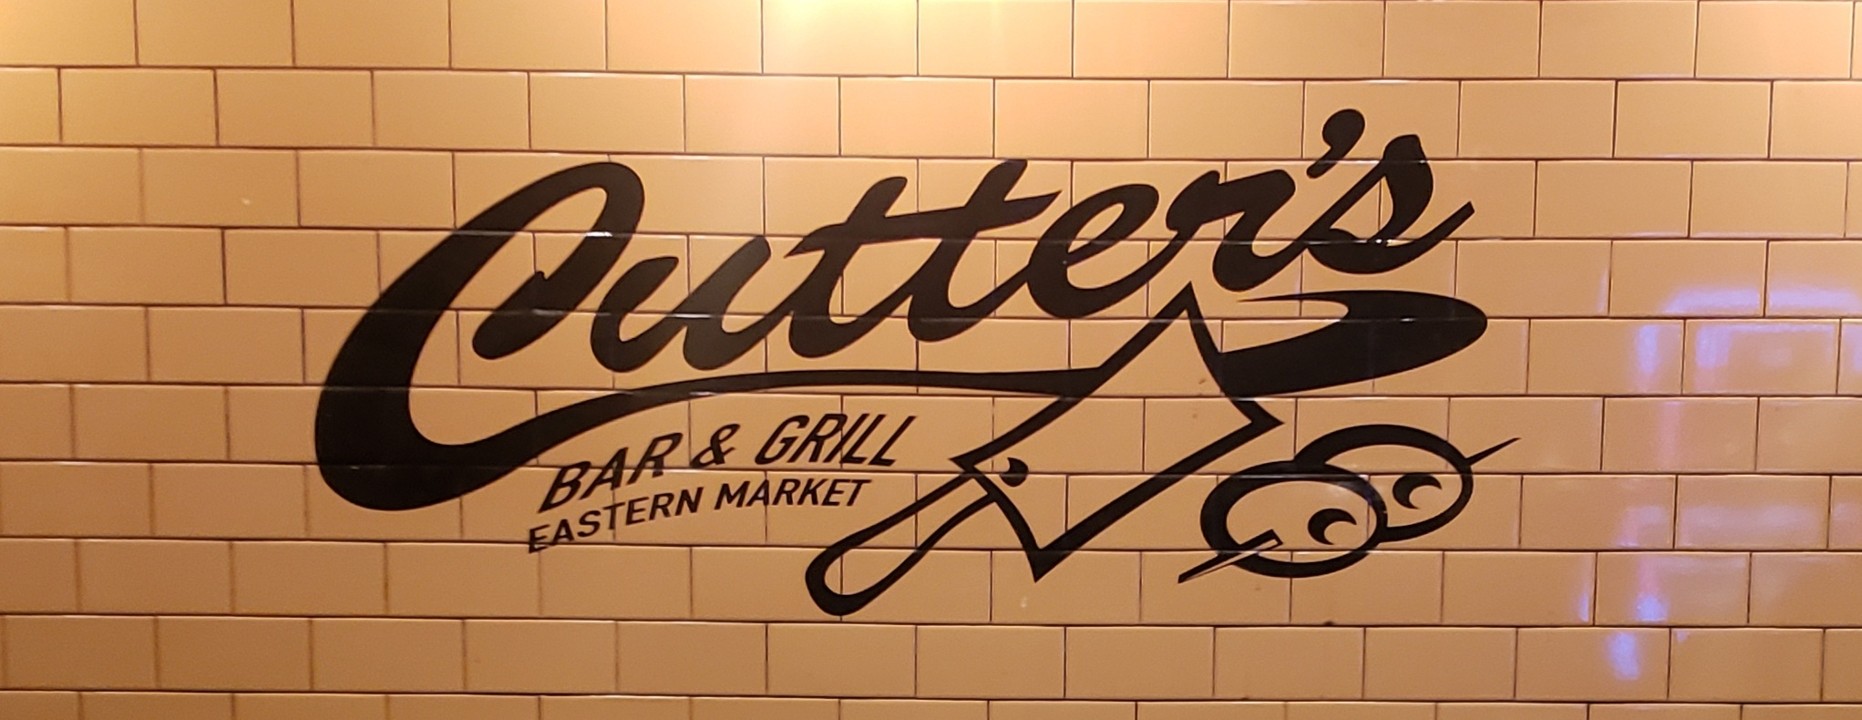 Breakfast & Burgers by Cutter's